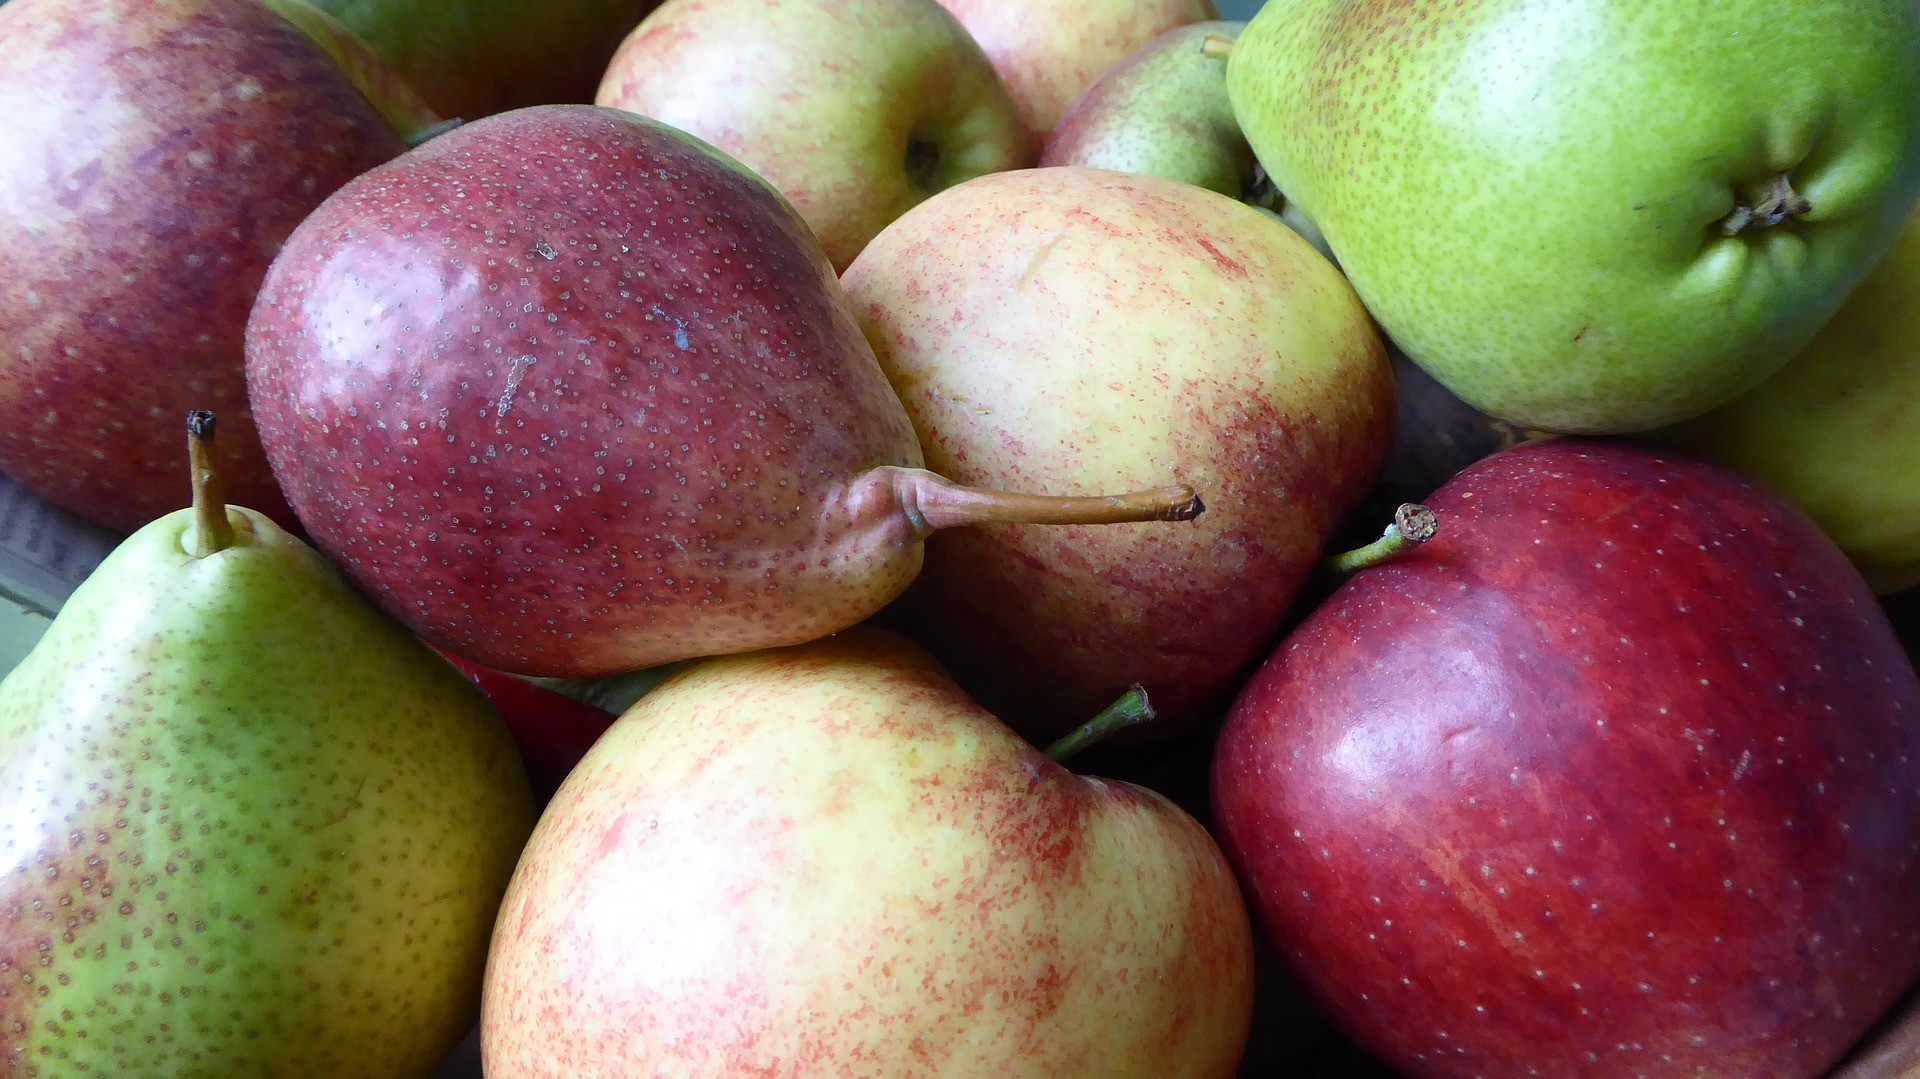 Nechajte ovocie trochu dozrieť. Jedna štúdia zistila, že proces dozrievania umožňuje rozpad chlorofylu pri dozrievaní jabĺk a hrušiek, čo naopak spôsobuje v ovocí viac "vysoko aktívnych" antioxidantov.